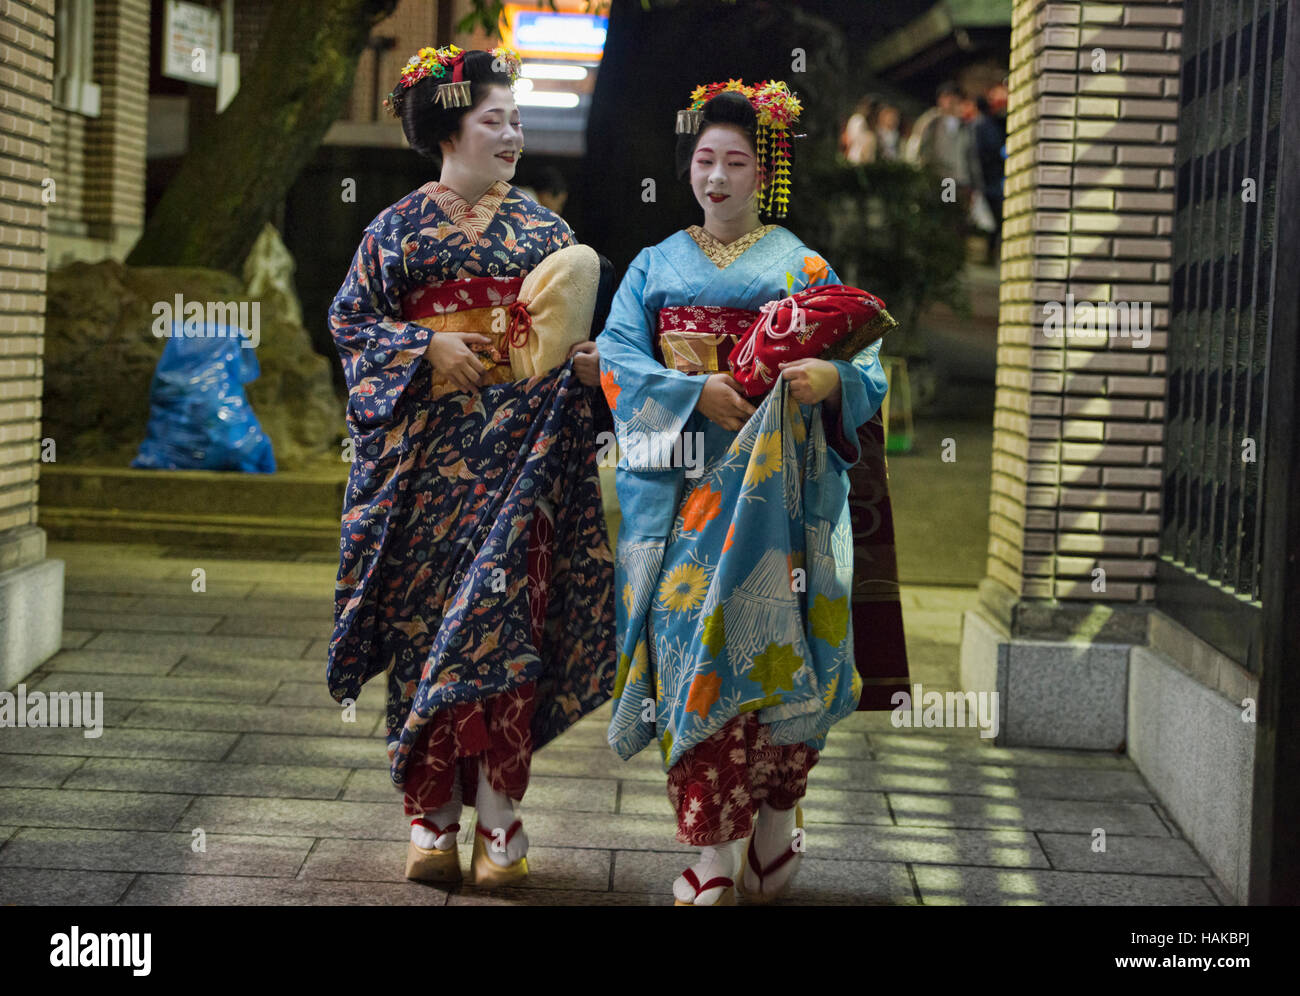 Deux balades de la maiko, Gion, Kyoto, Japon Banque D'Images